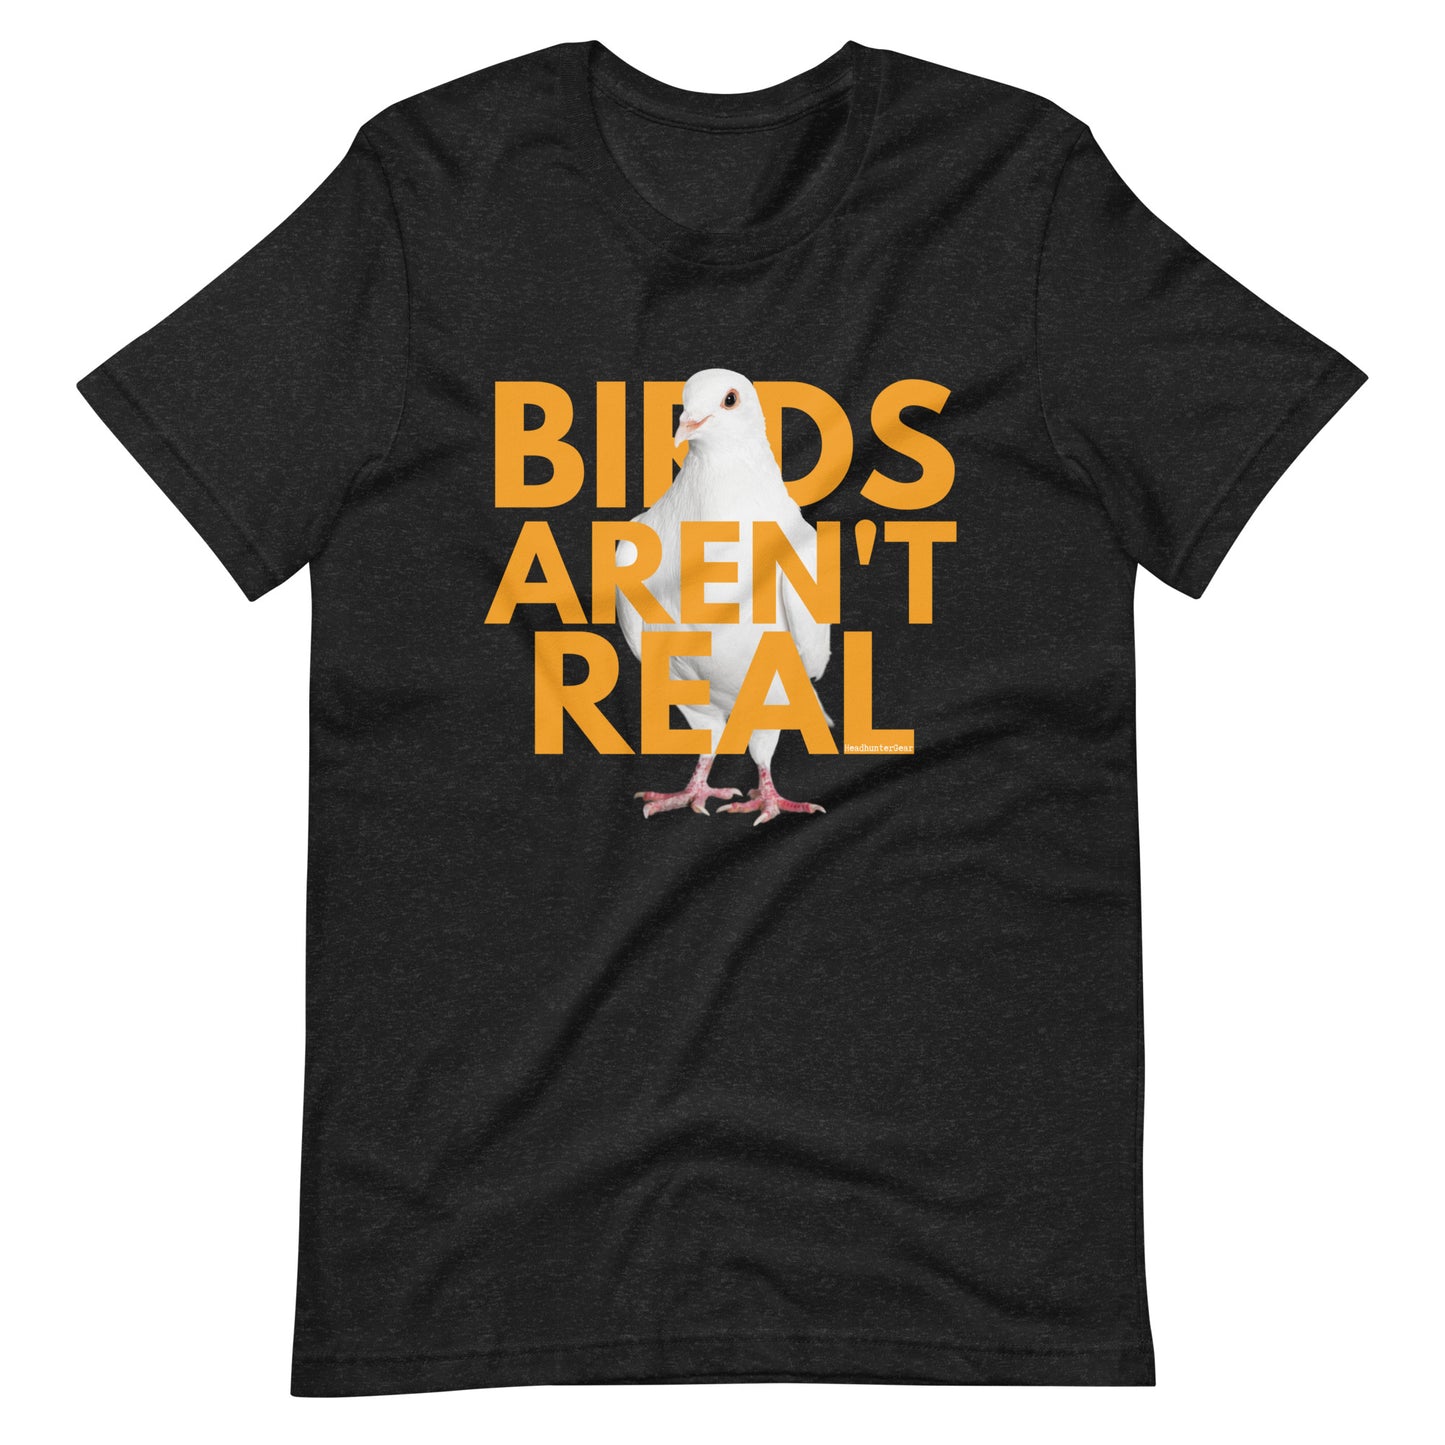 Birds Aren't Real T-Shirt